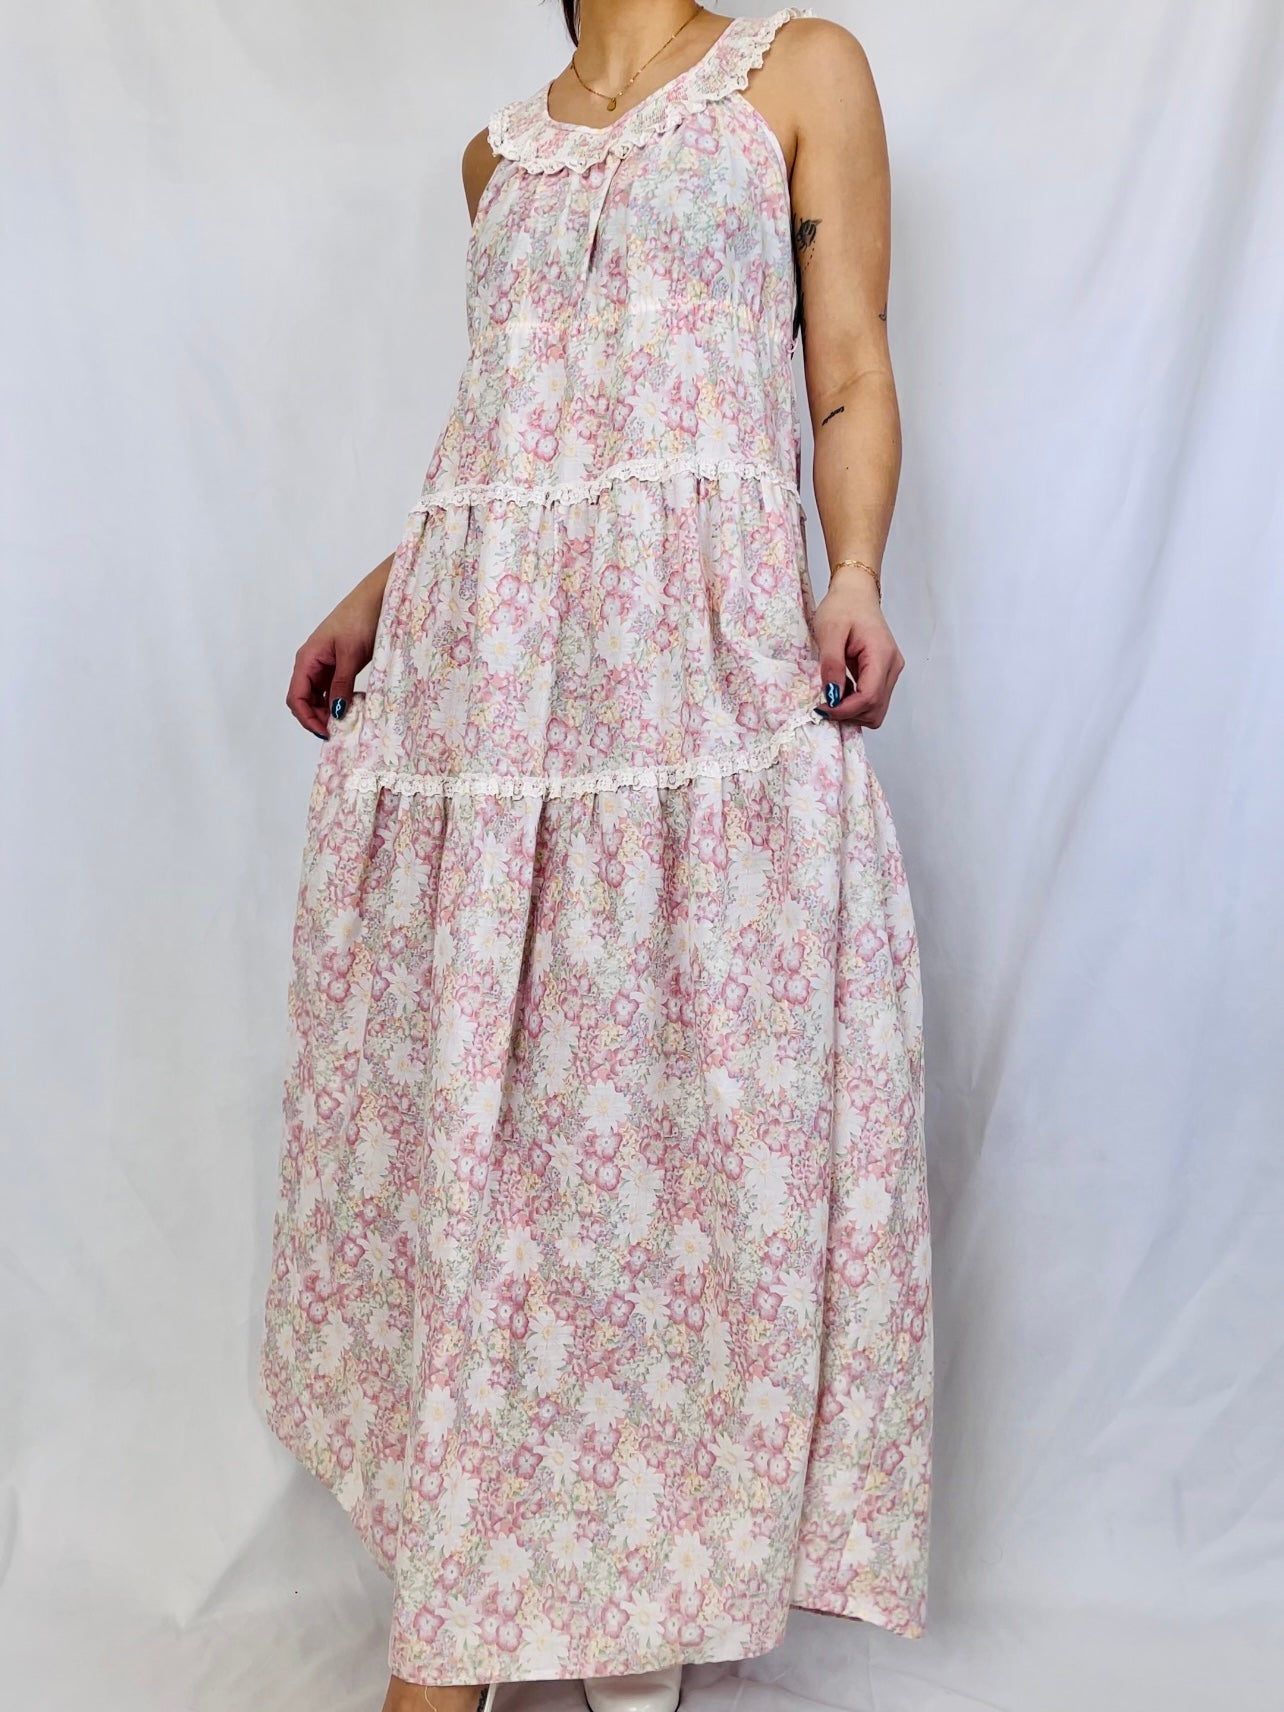 Floral Maxi Dress (S/M)